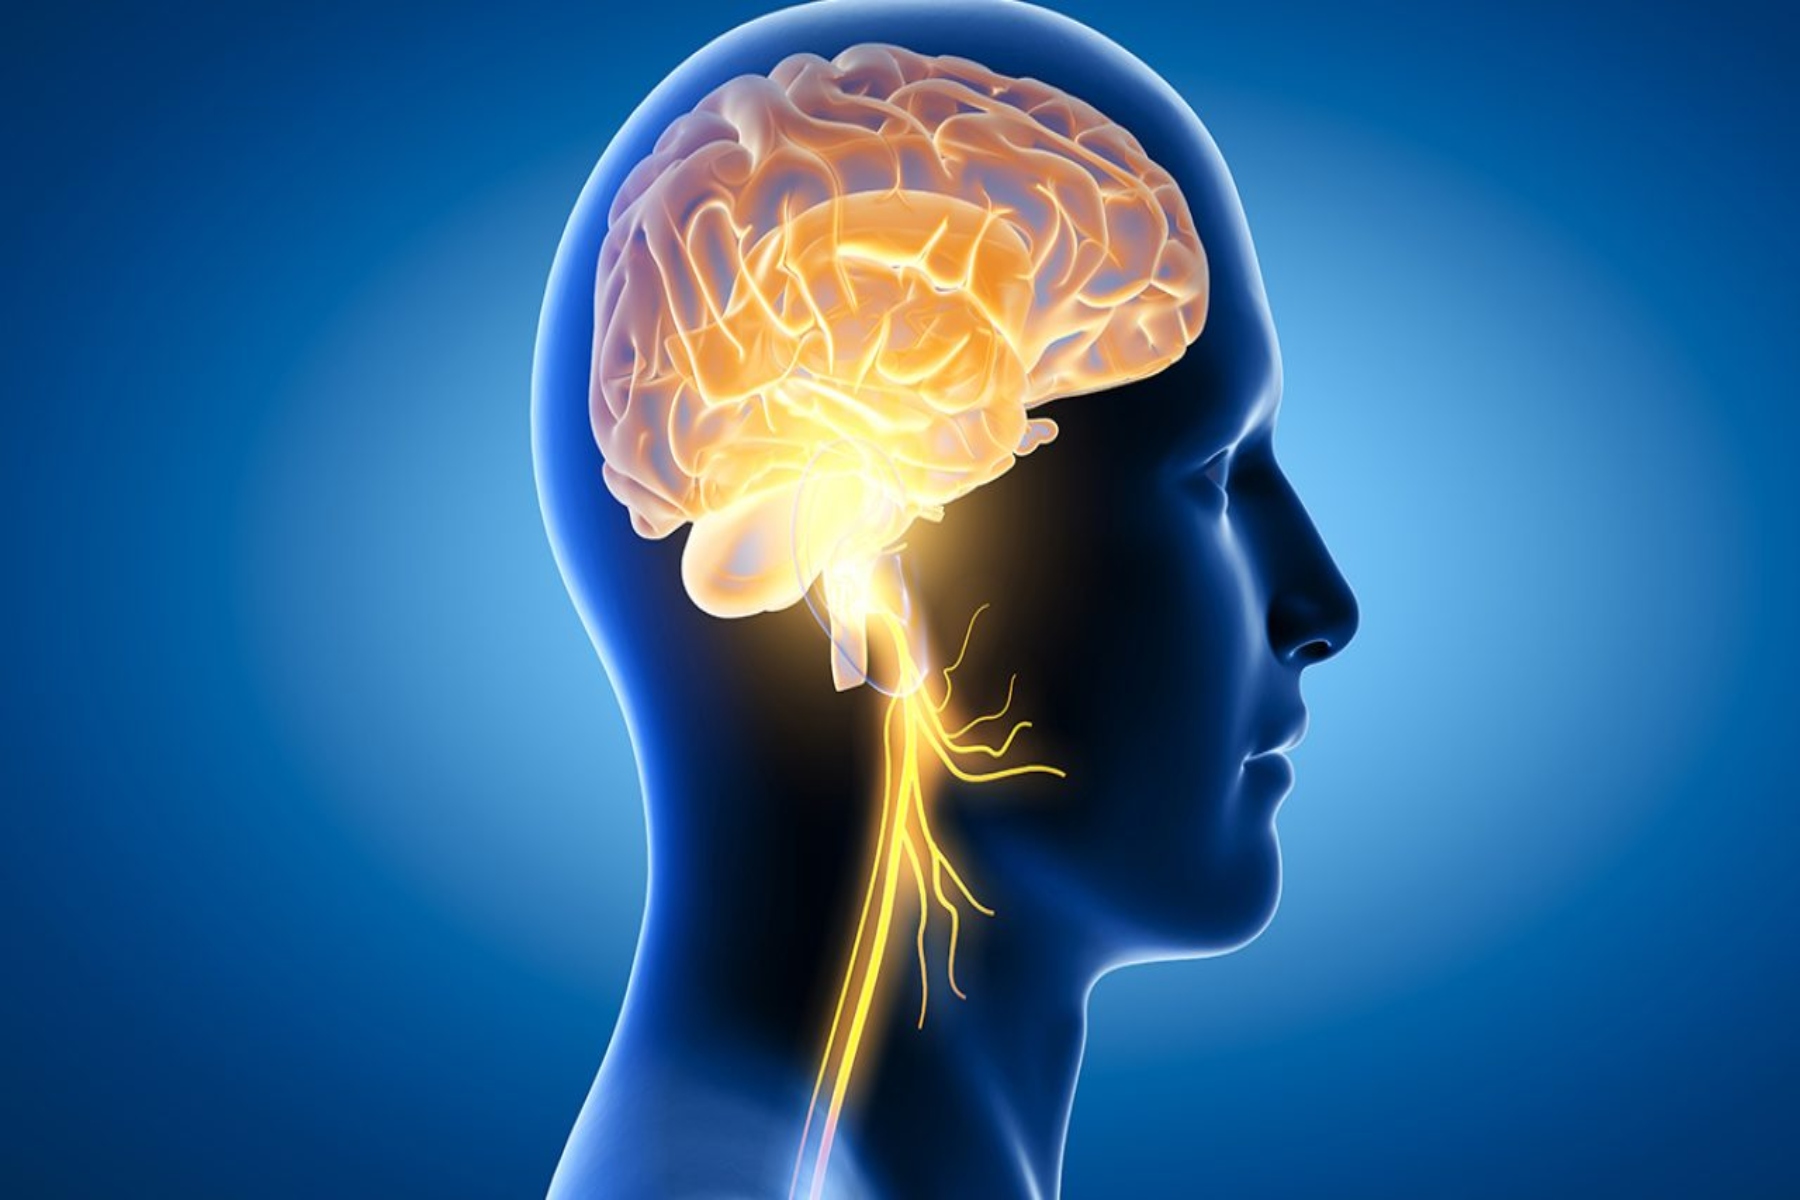 Υγεία εγκεφάλου: Ενισχύοντας την υγεία του εγκεφάλου και την πυκνότητα της φαιάς ουσίας;